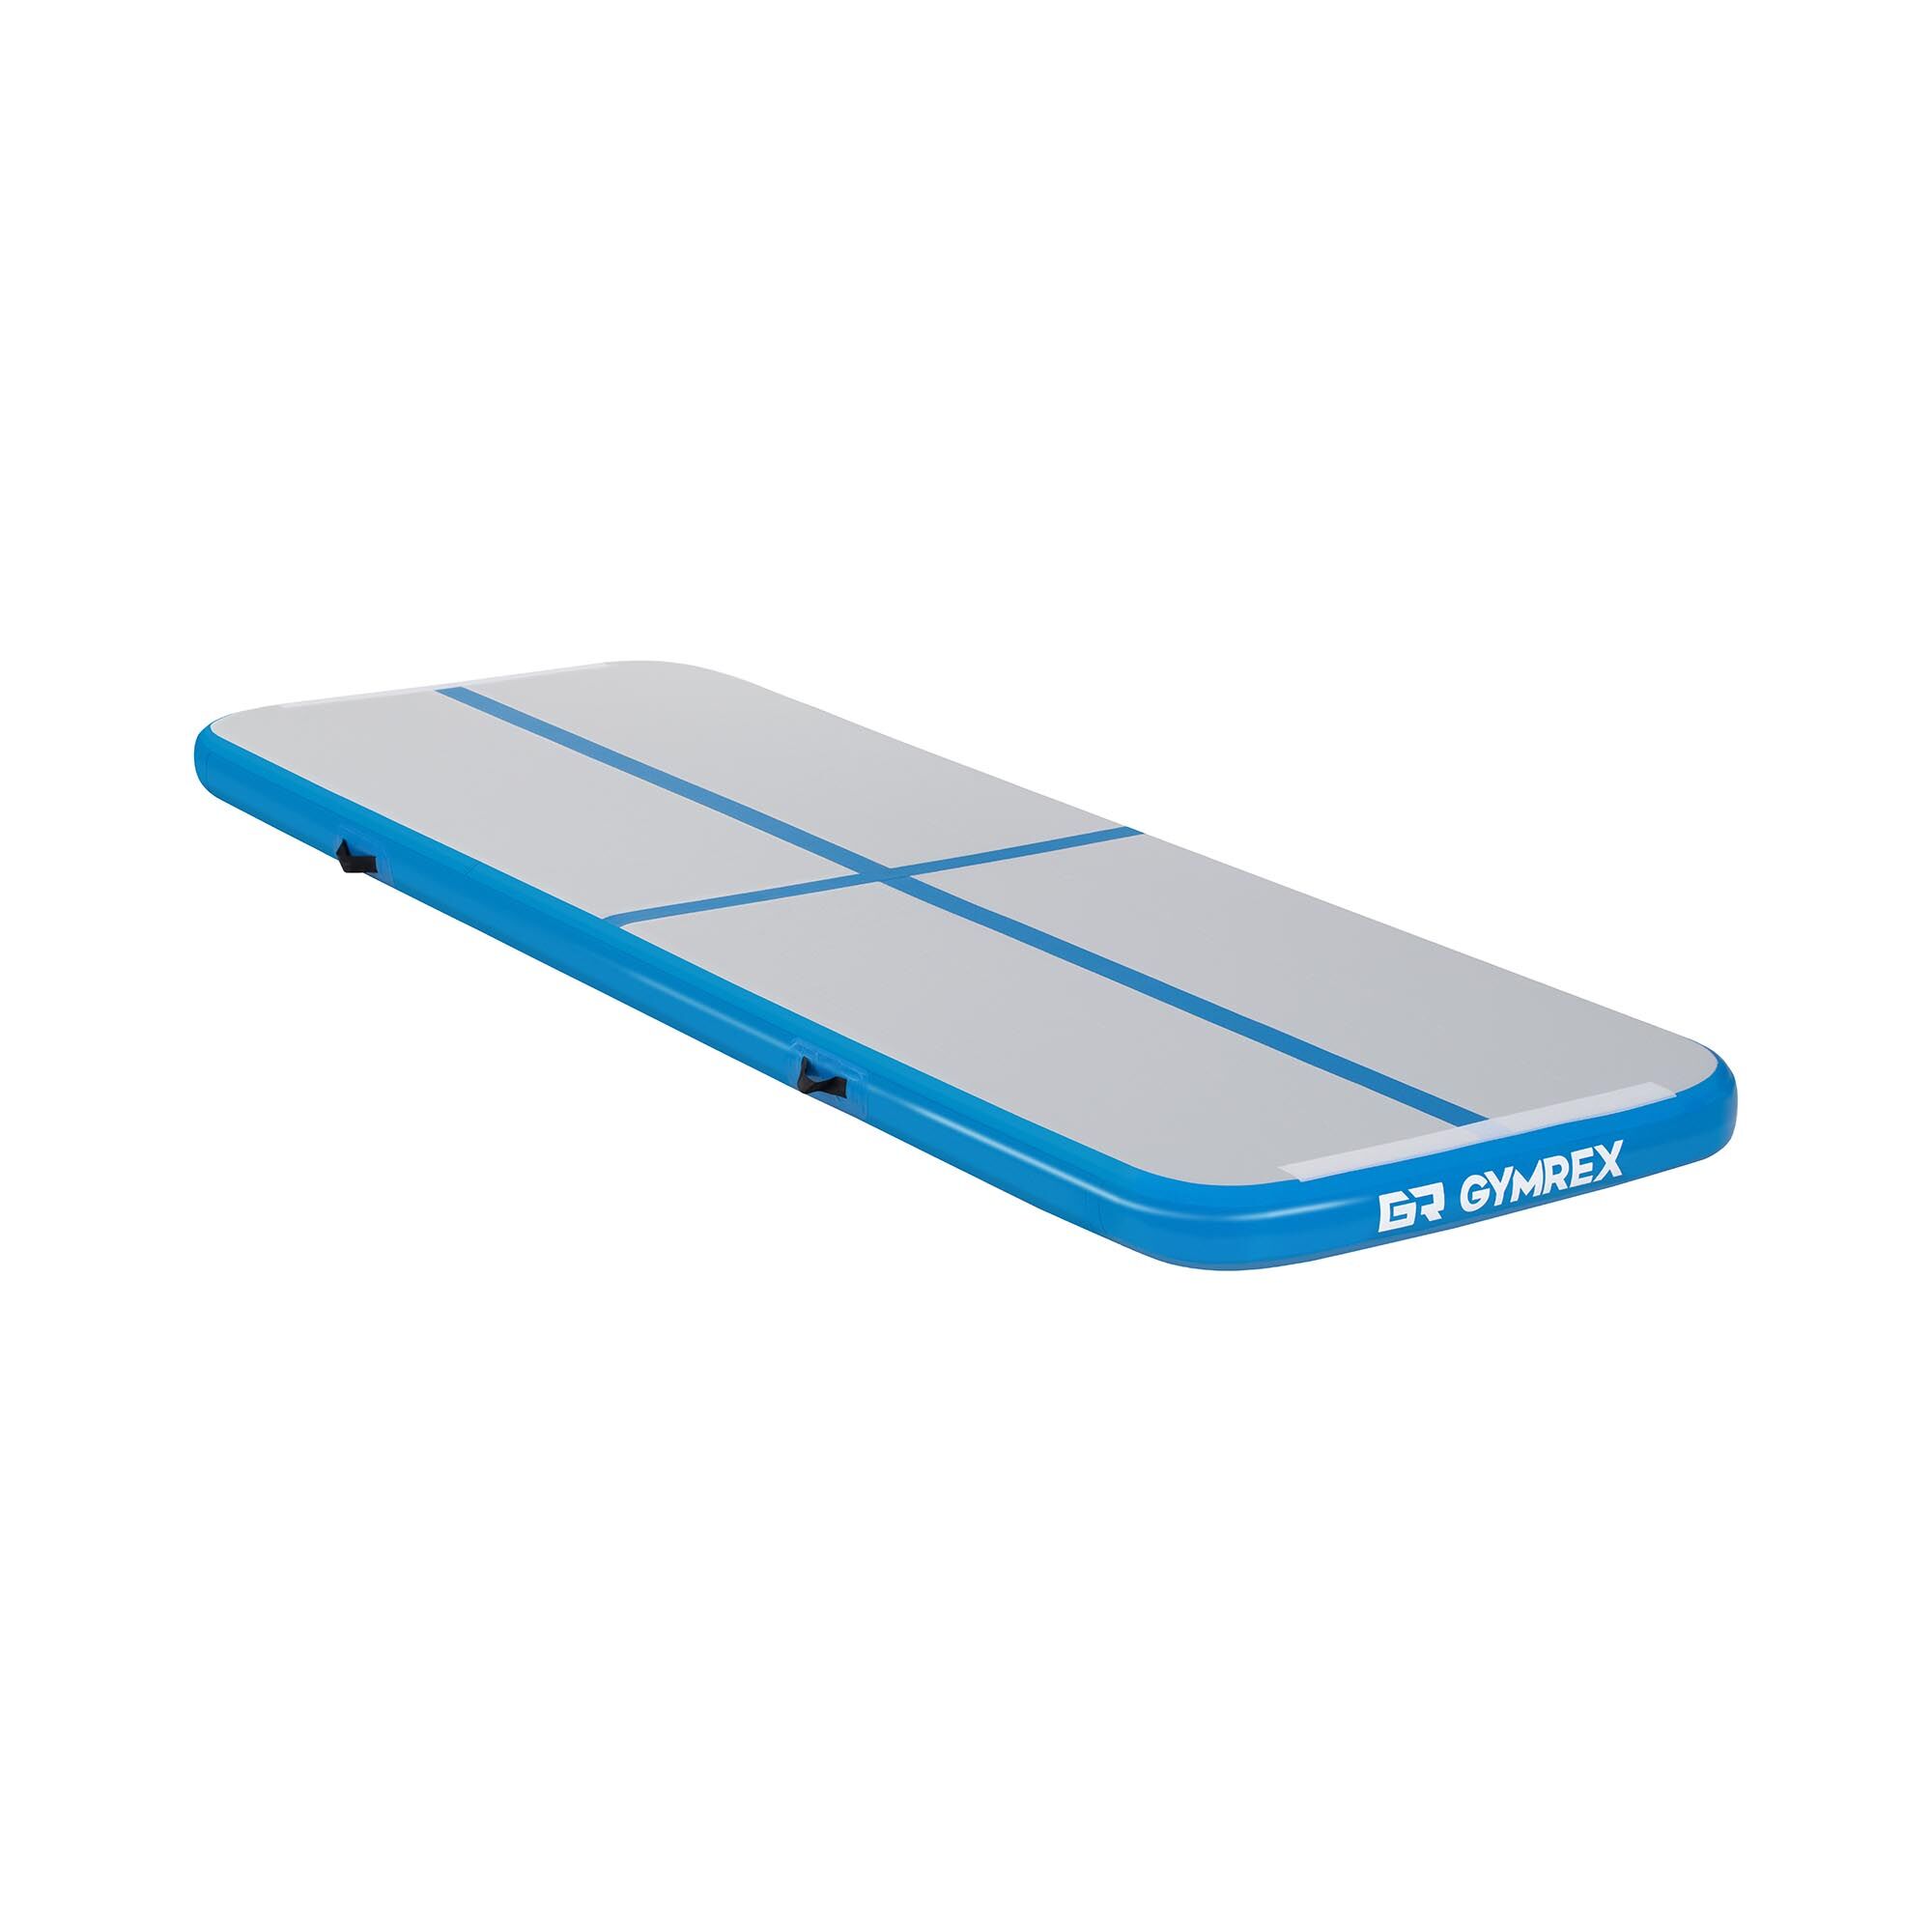 Gymrex Air track - Aitrack - 300 x 100 x 10 cm - 150 kg - Bleu/gris GR-ATM1